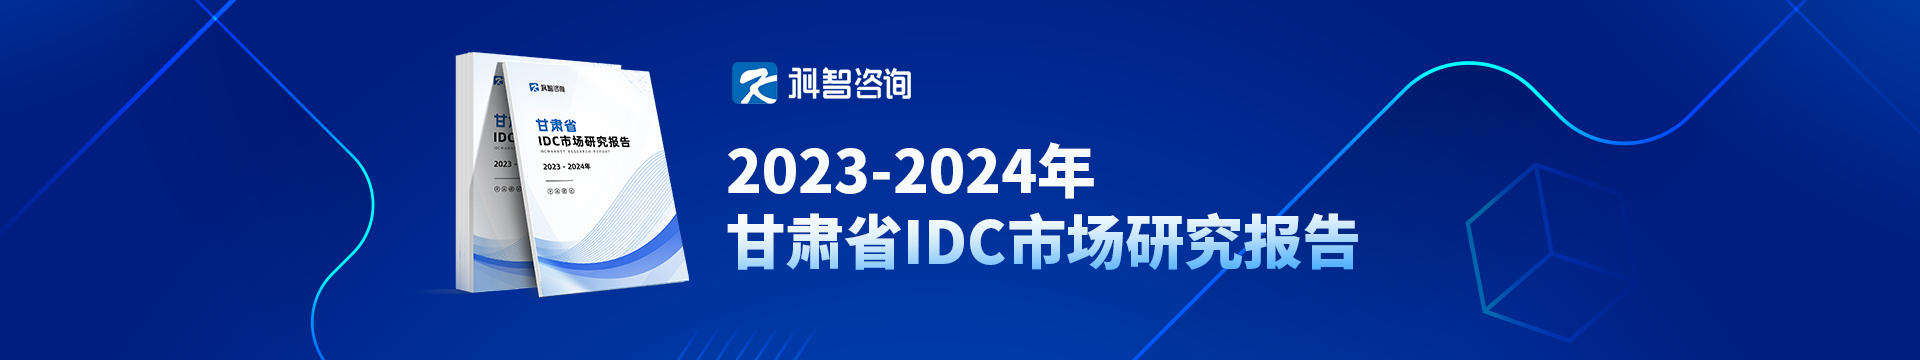 2023-2024年甘肃省IDC市场研究报告